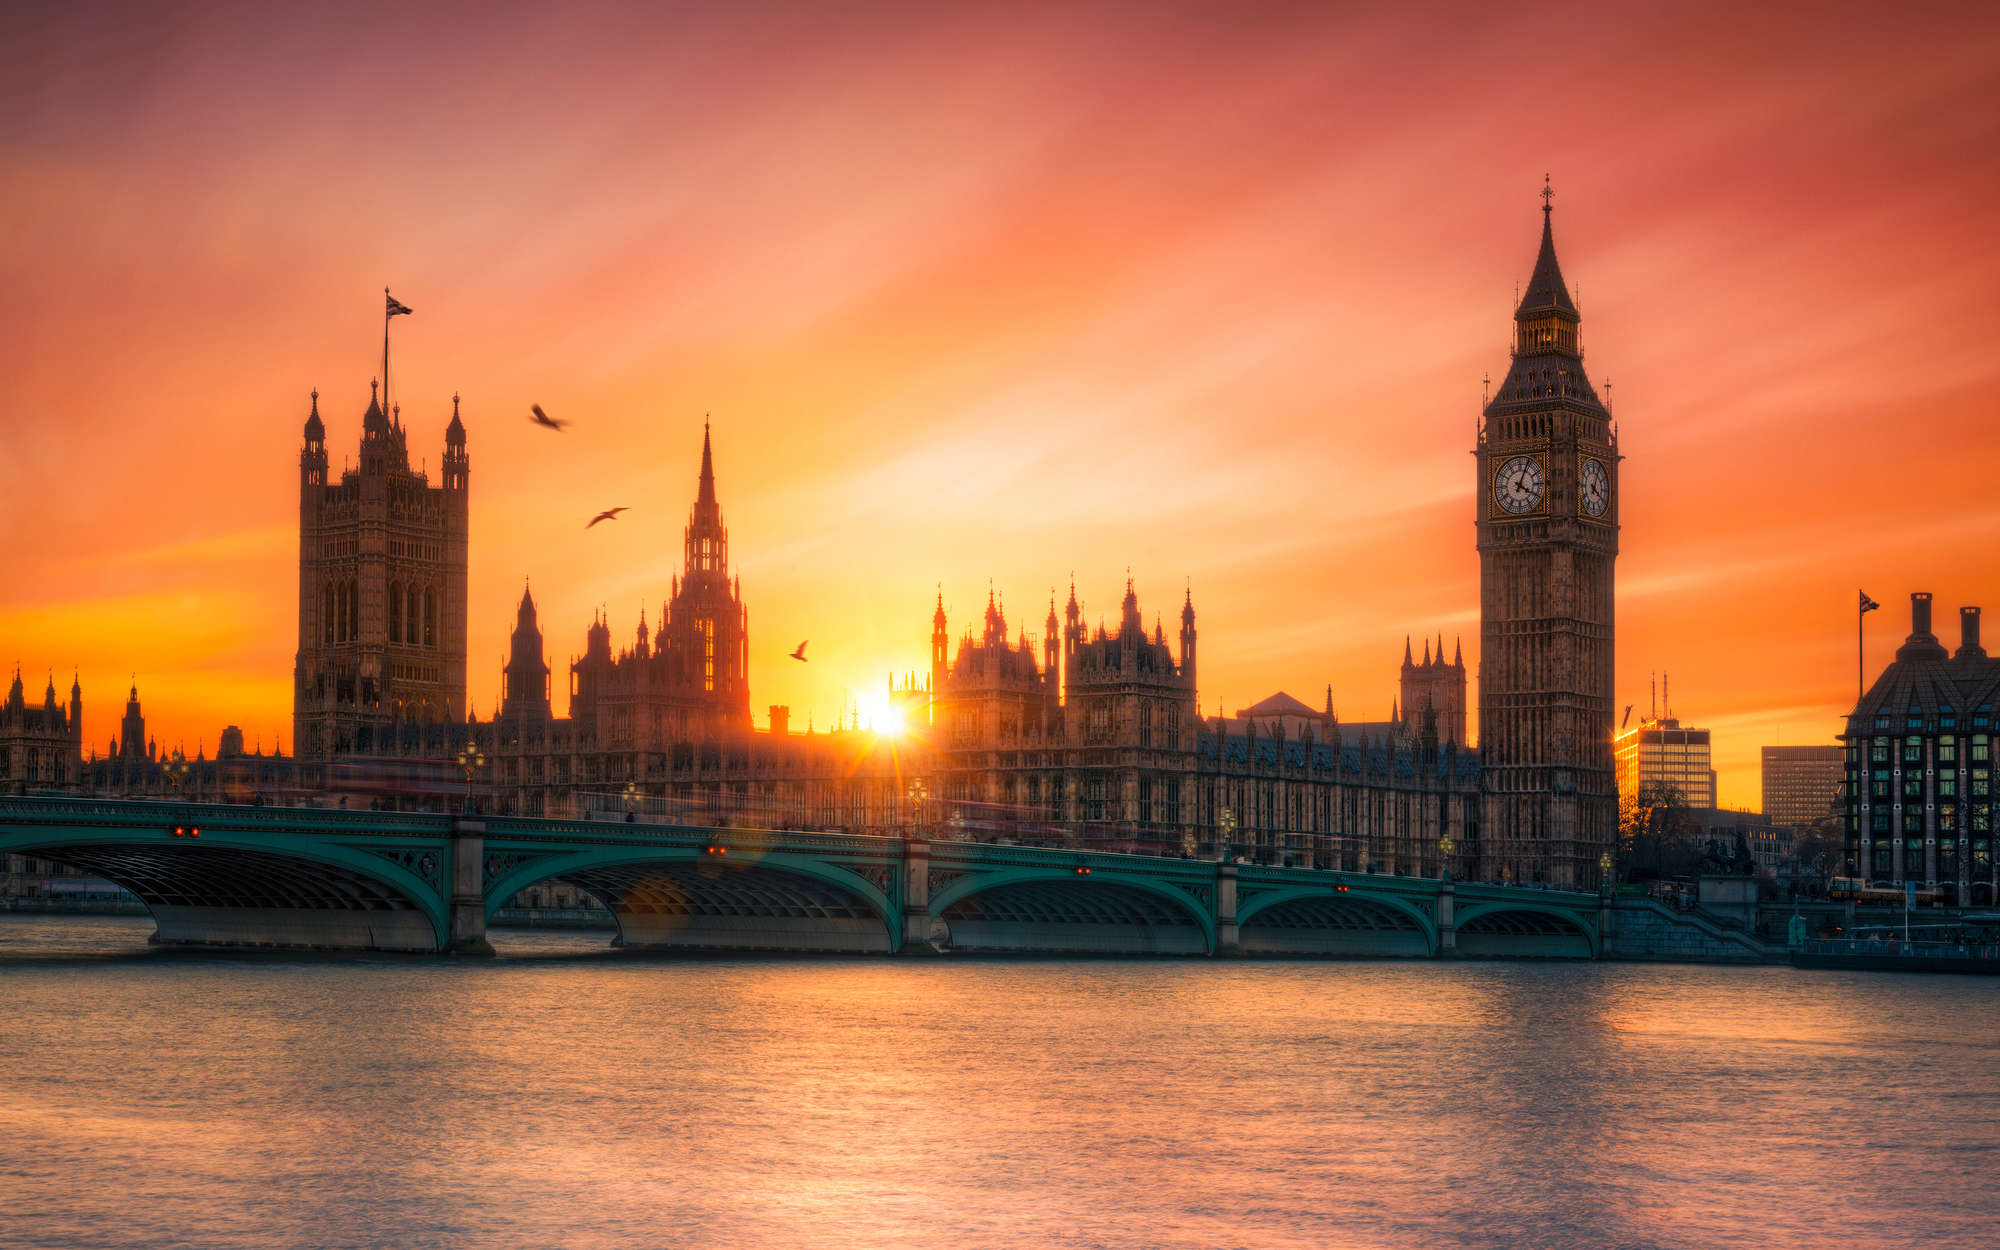             papiers peints à impression numérique London Skyline au coucher du soleil - intissé lisse mat
        